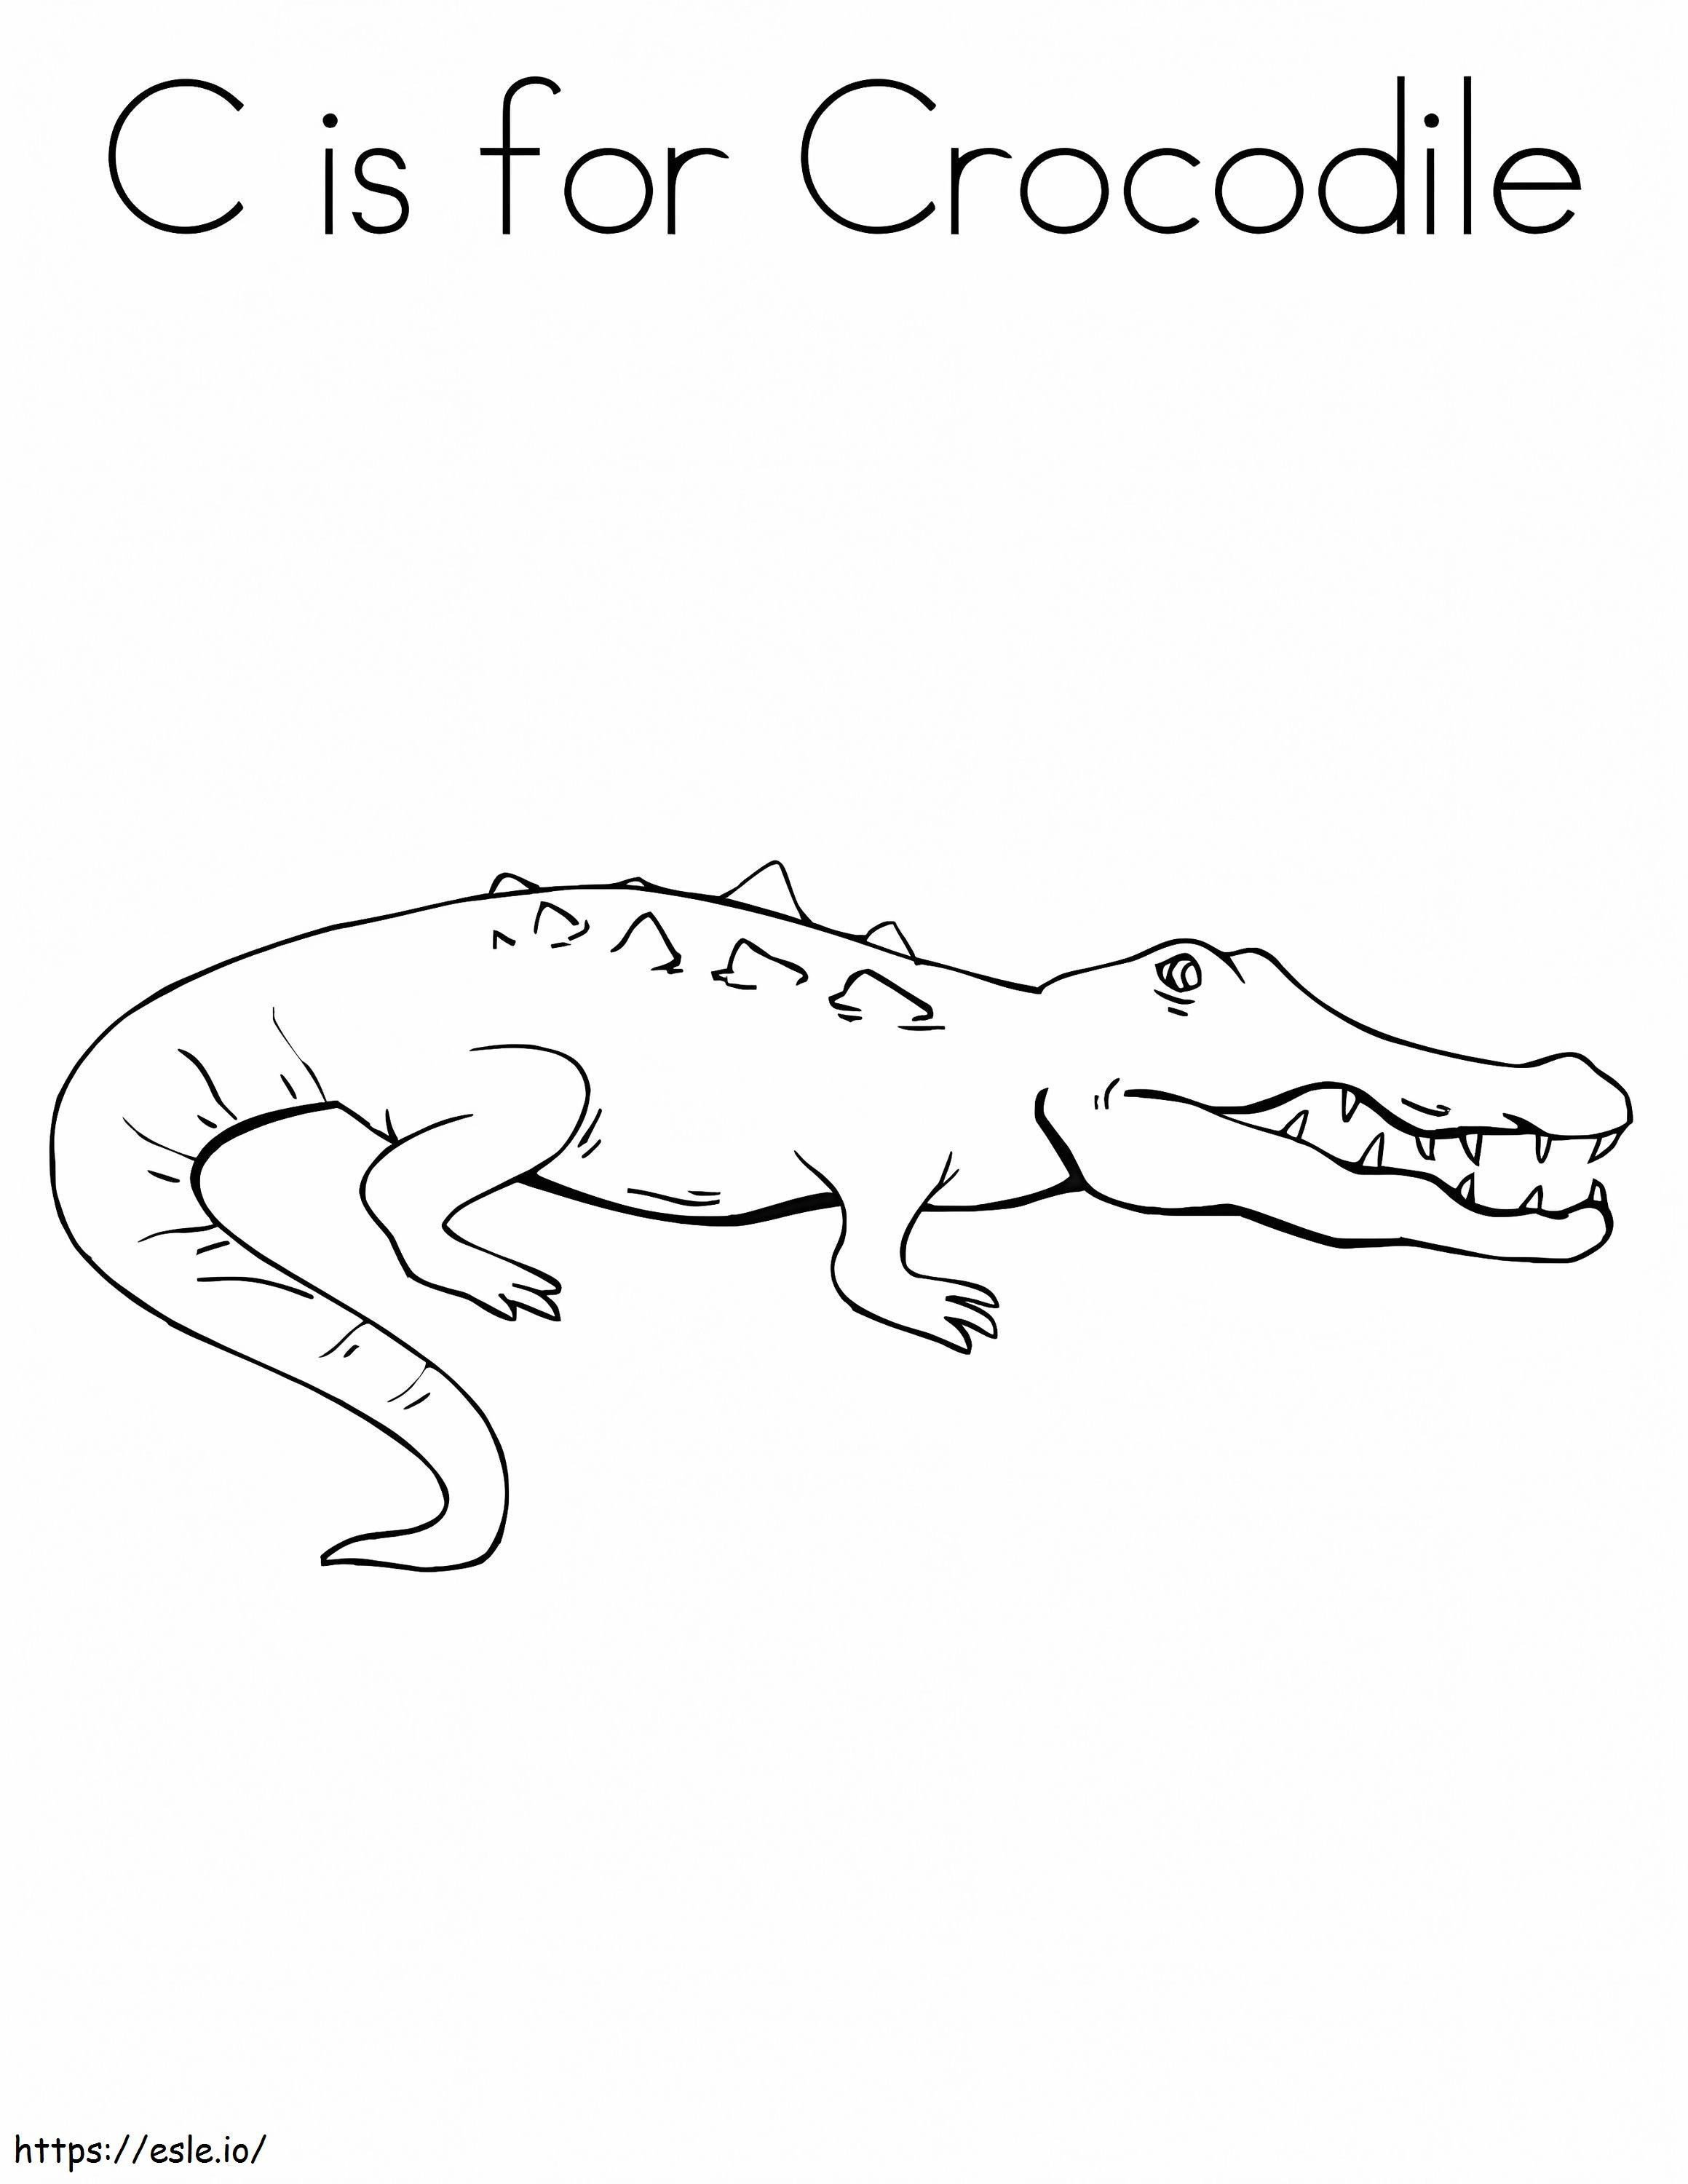 Coloriage C est pour Crocodile à imprimer dessin